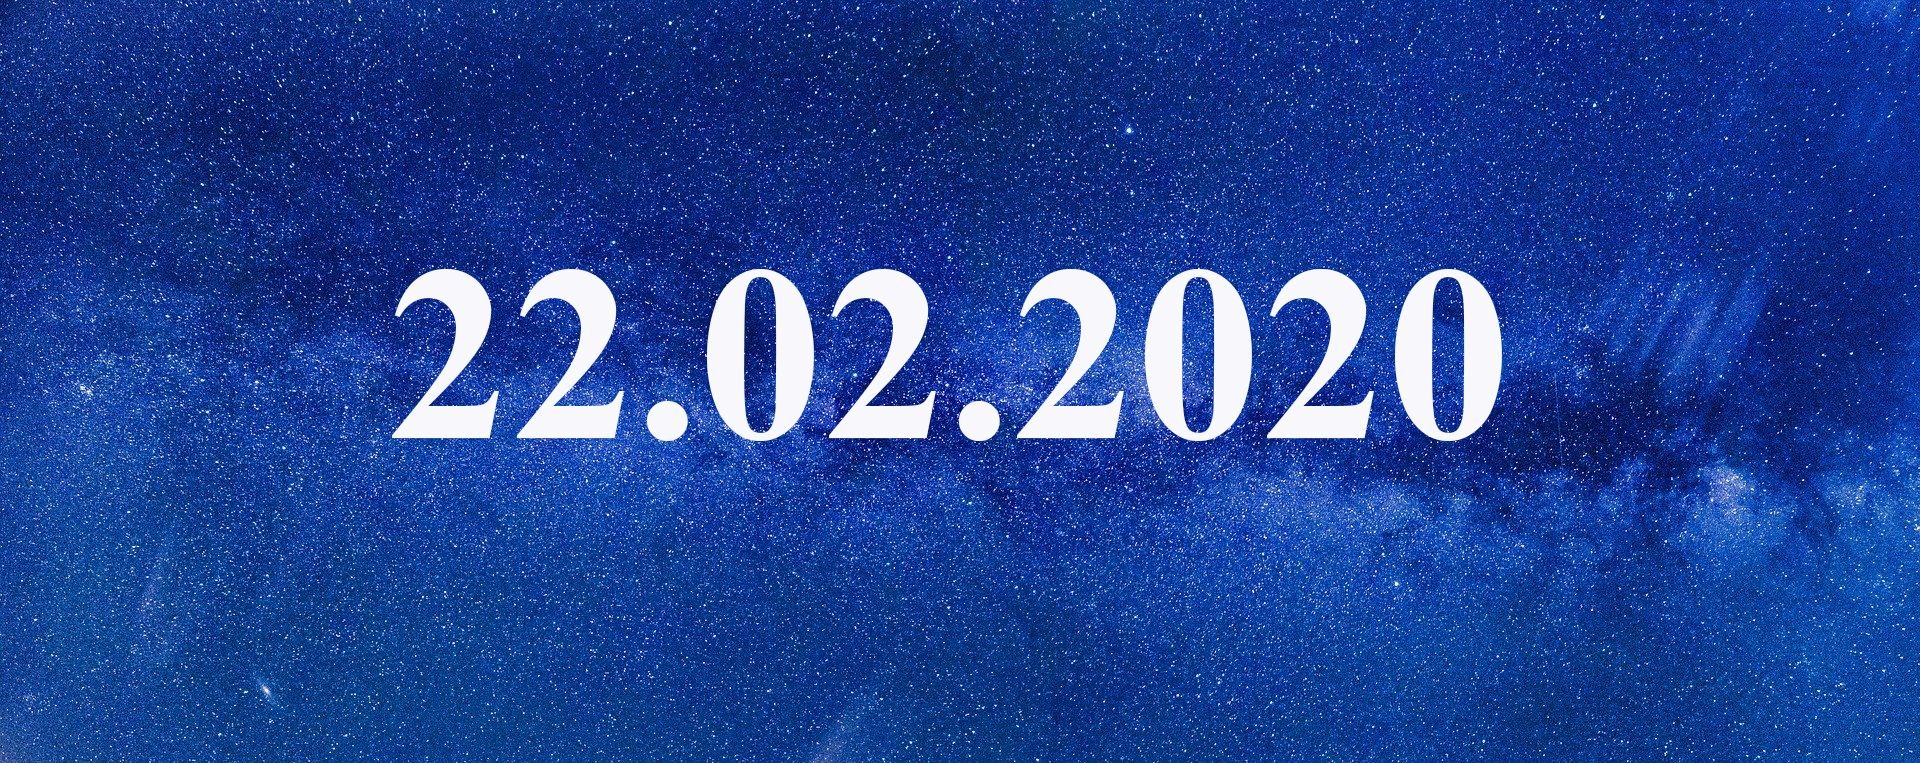 10 февраля 2020 день. Зеркальная Дата 22.02.2022. Дата 22.02.2022. Дата красивыми цифрами. 02.02.2022 Мистическая Дата.